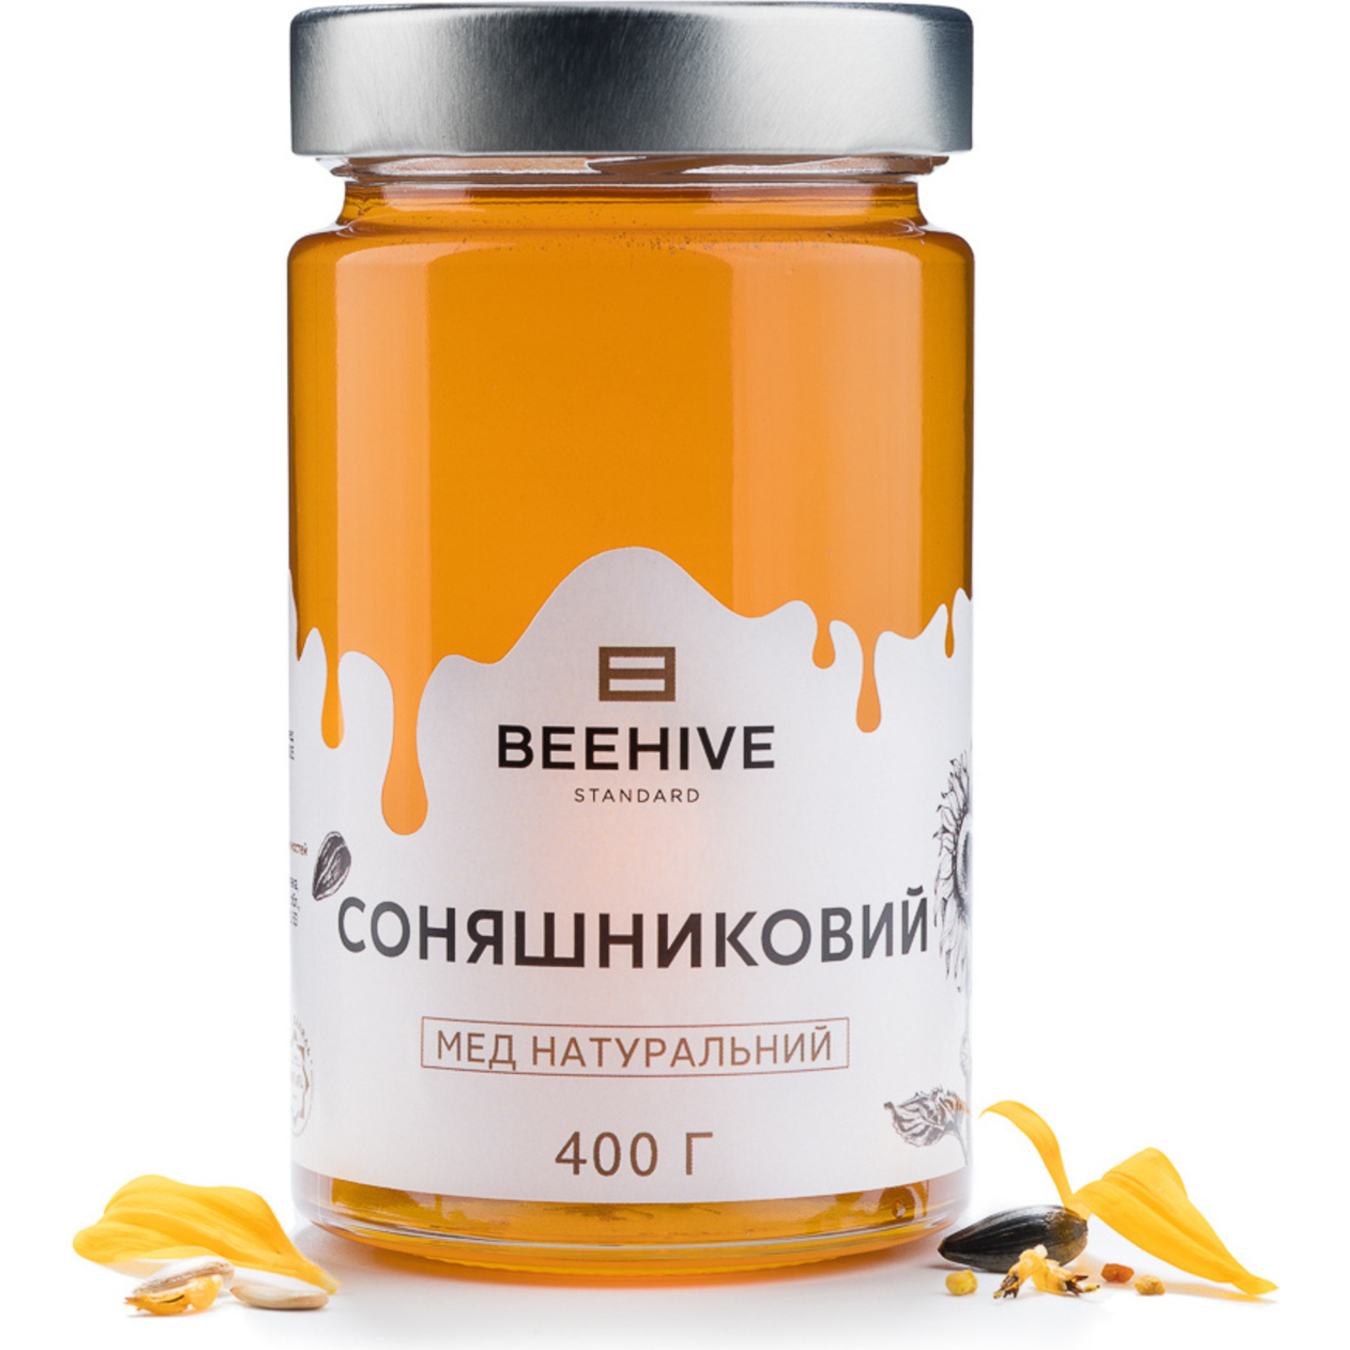 Honey Beehive Standard natural sunflower glass jar 400g